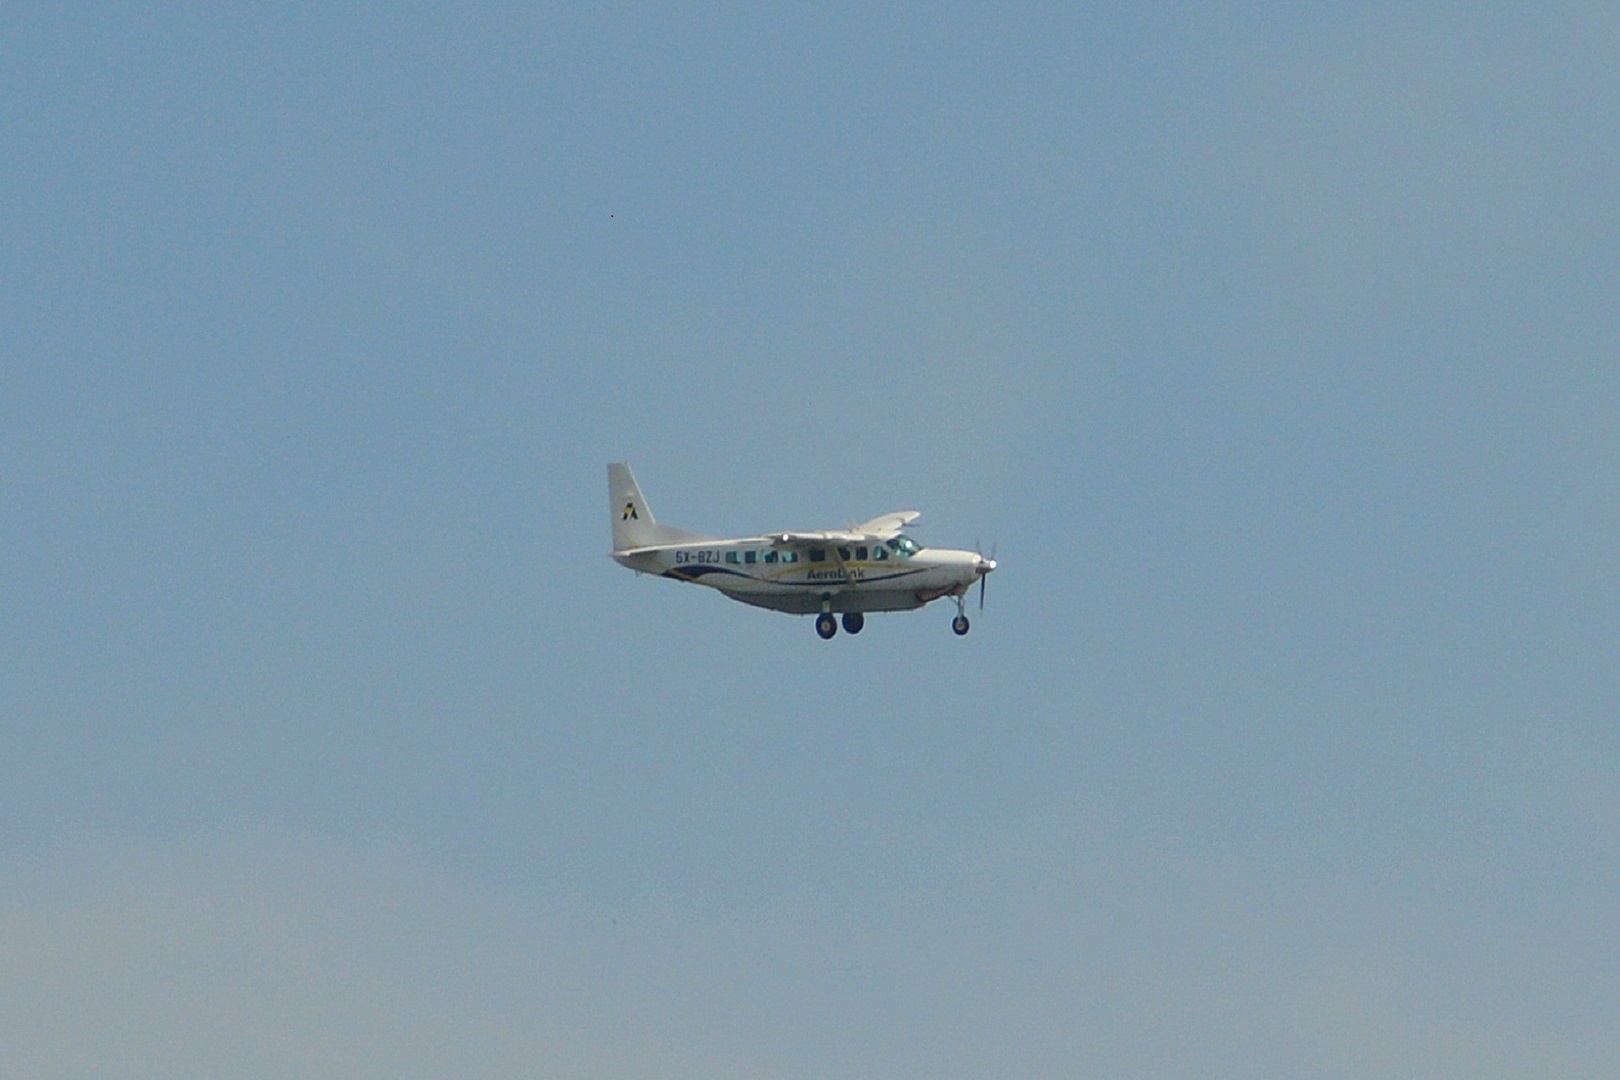 Aerolink Plane In Flight